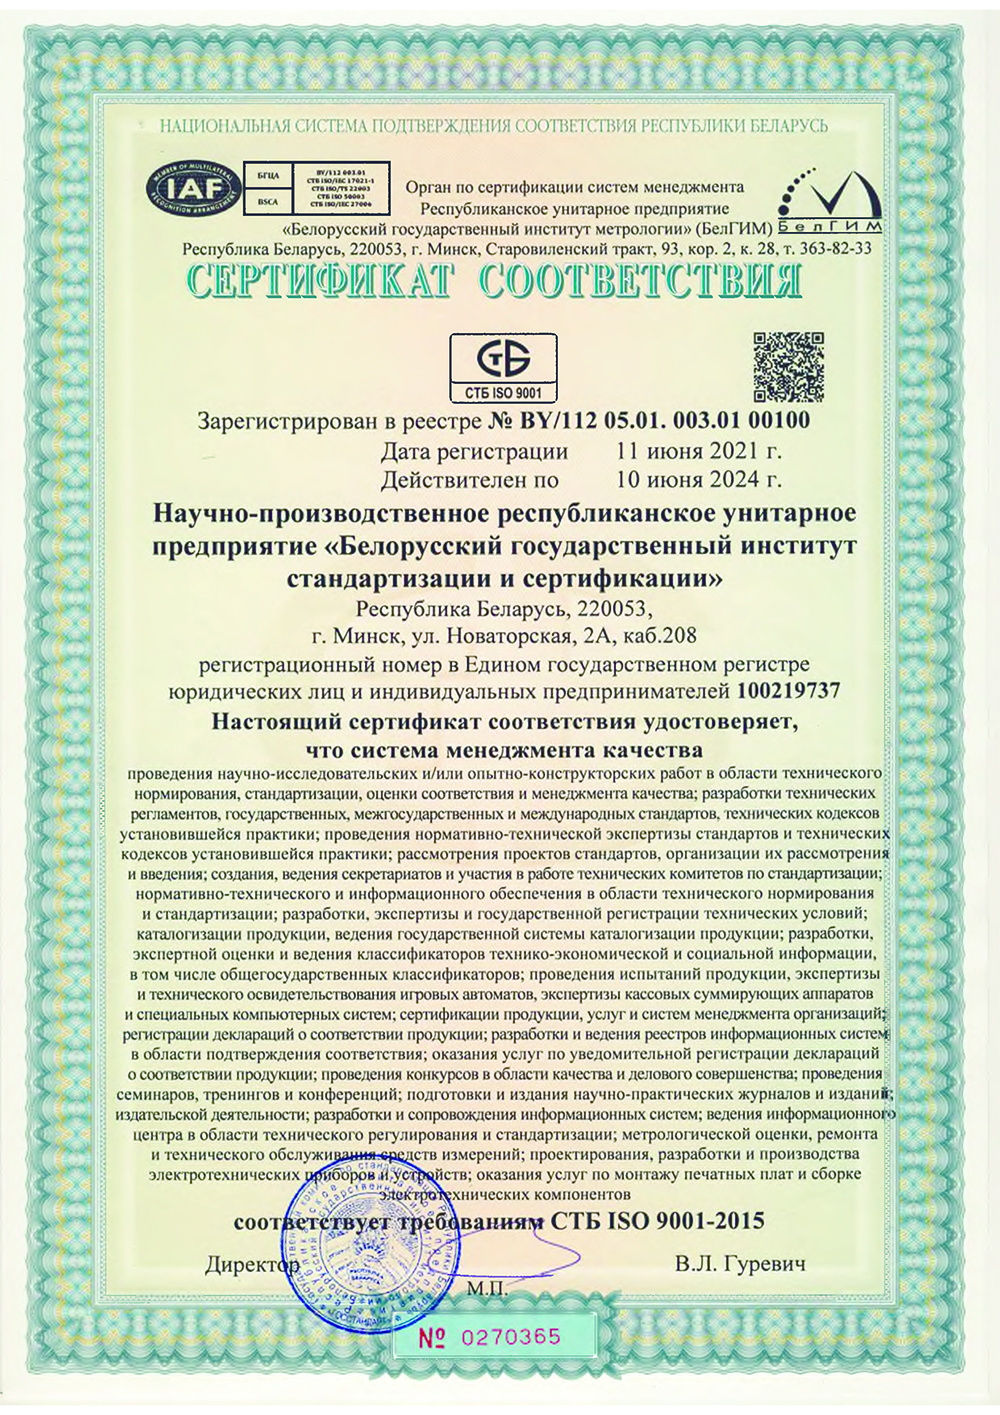 Сертификат соответствия № BY/112 05.01.003.01 00100 от 11.06.2021 действителен до 10.06.2024